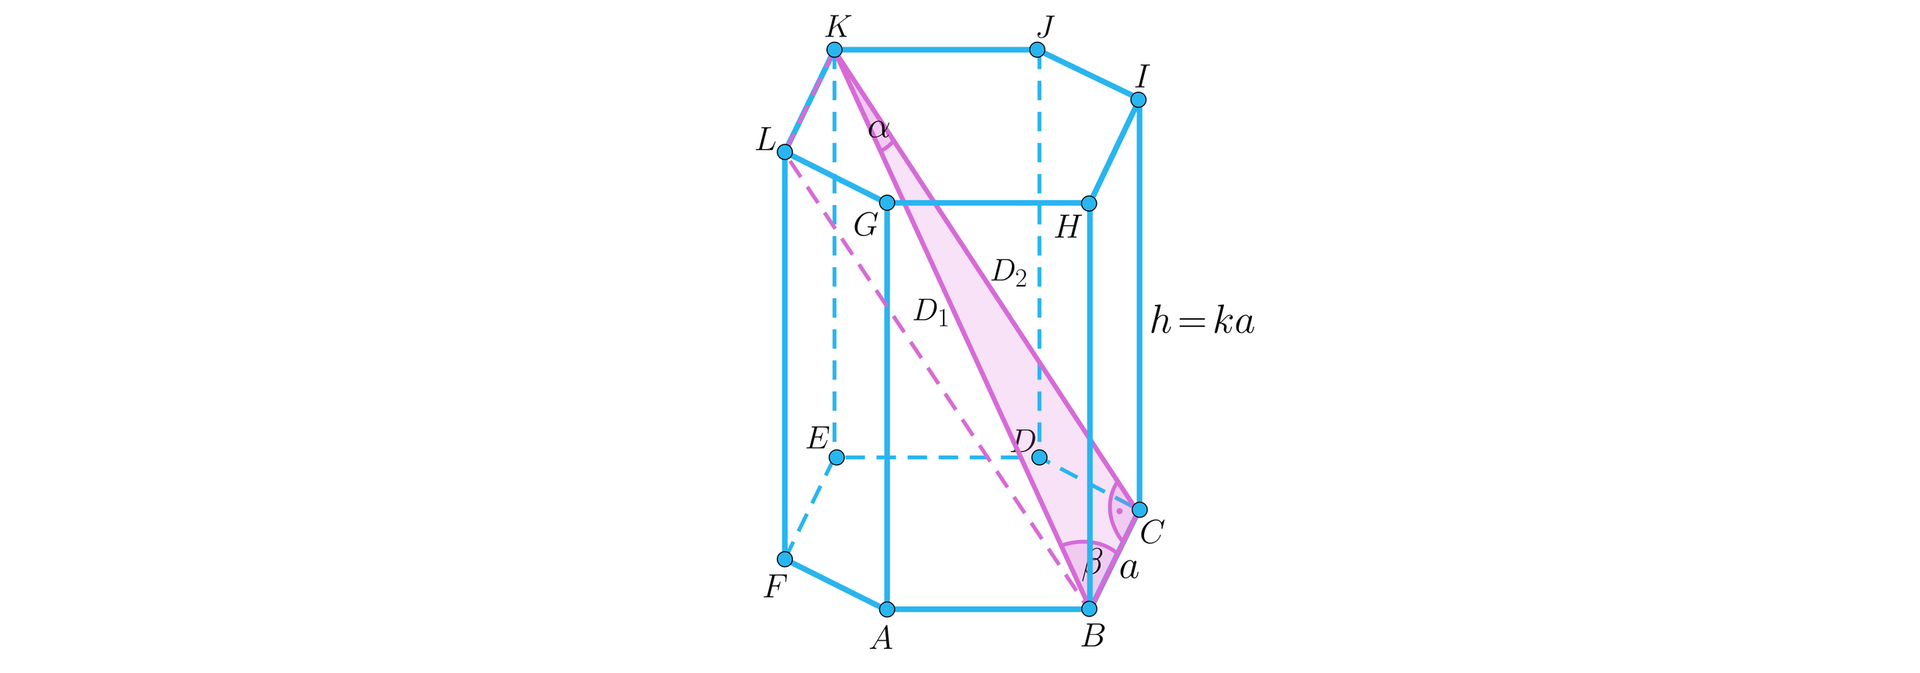 Na ilustracji przedstawiono graniastosłup prawidłowy sześciokątny o podstawie dolnej ABCDEF, oraz górnej odpowiednio GHIJKL. Krawędź podstawy oznaczono literą a, natomiast wysokość literą h. Wysokość jest równa k×a. Linią przerywaną zaznaczono odcinek L B będący krótszą przekątną bryły. Kolorem różowym zamalowano trójkąt prostokątny BCK, o przyprostokątnych stanowiących krawędź B C dolnej podstawy i krótszą przekątną bryły C K graniastosłupa. Odcinek ten oznaczono wielką literą D z indeksem dolnym dwa. Przeciwprostokątna trójkąta K B, to dłuższa przekątna bryły. Odcinek K B oznaczono wielką literą D o indeksie jeden. W trójkącie zaznaczono kąty wewnętrzne. Kąt przy wierzchołku B wynosi β, kąt przy wierzchołku K wynosi α, kąt przy wierzchołku C jest kątem prostym. 